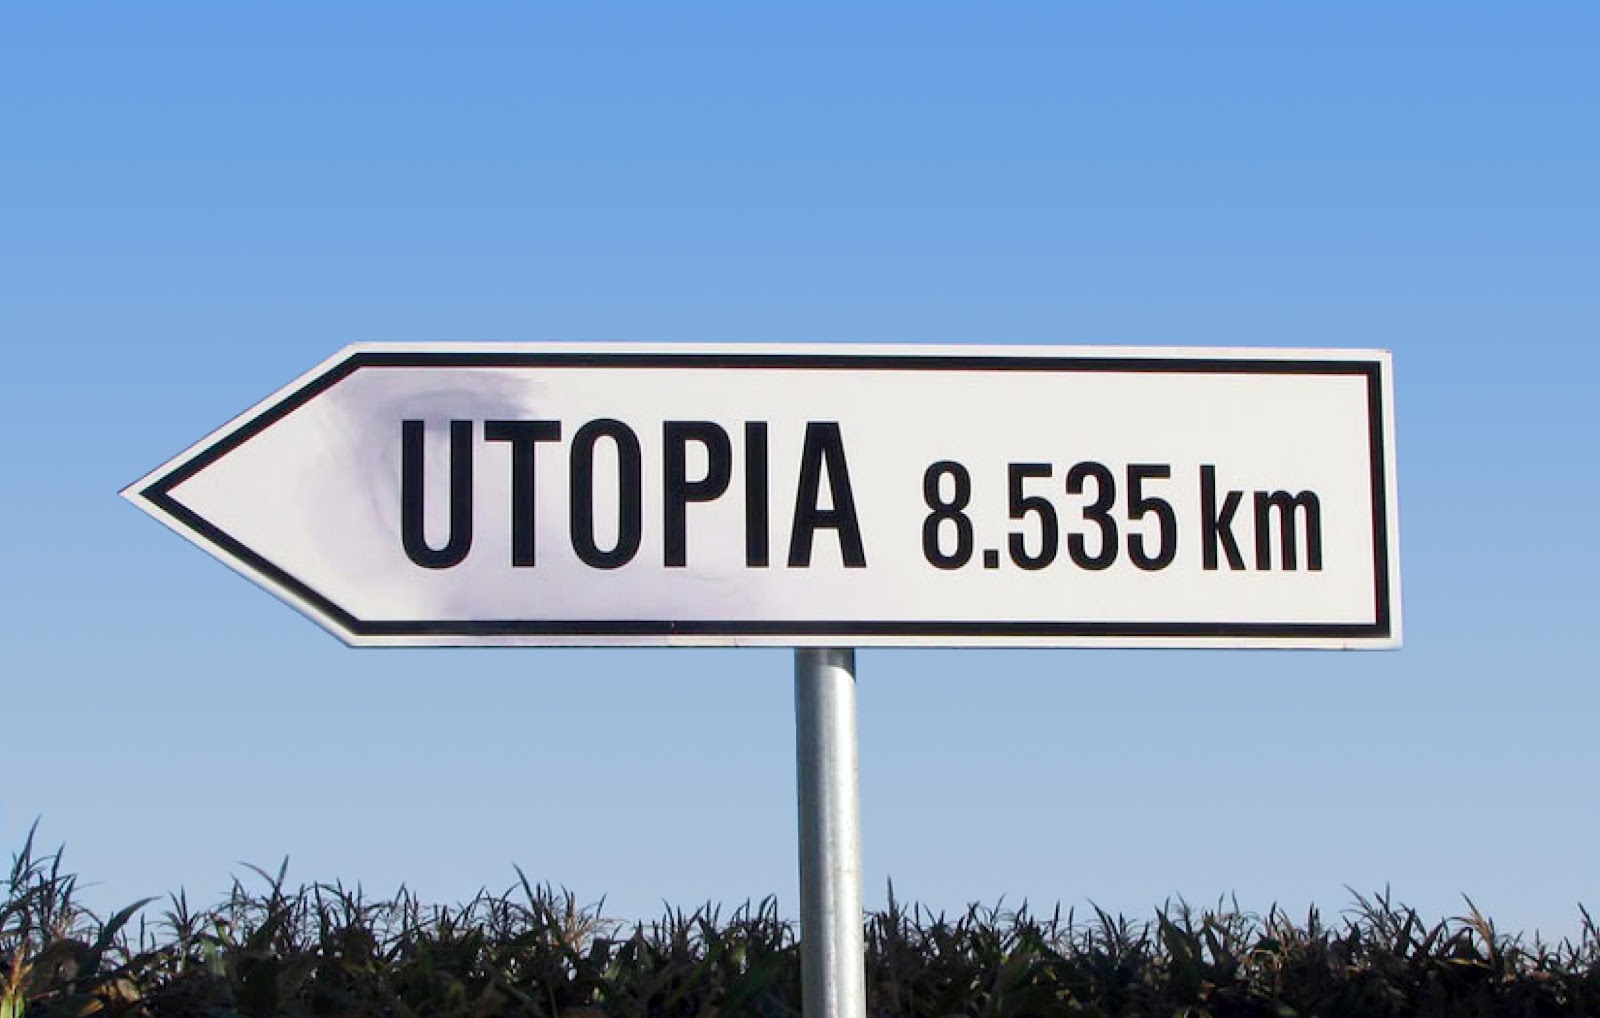 Mores utopia essay